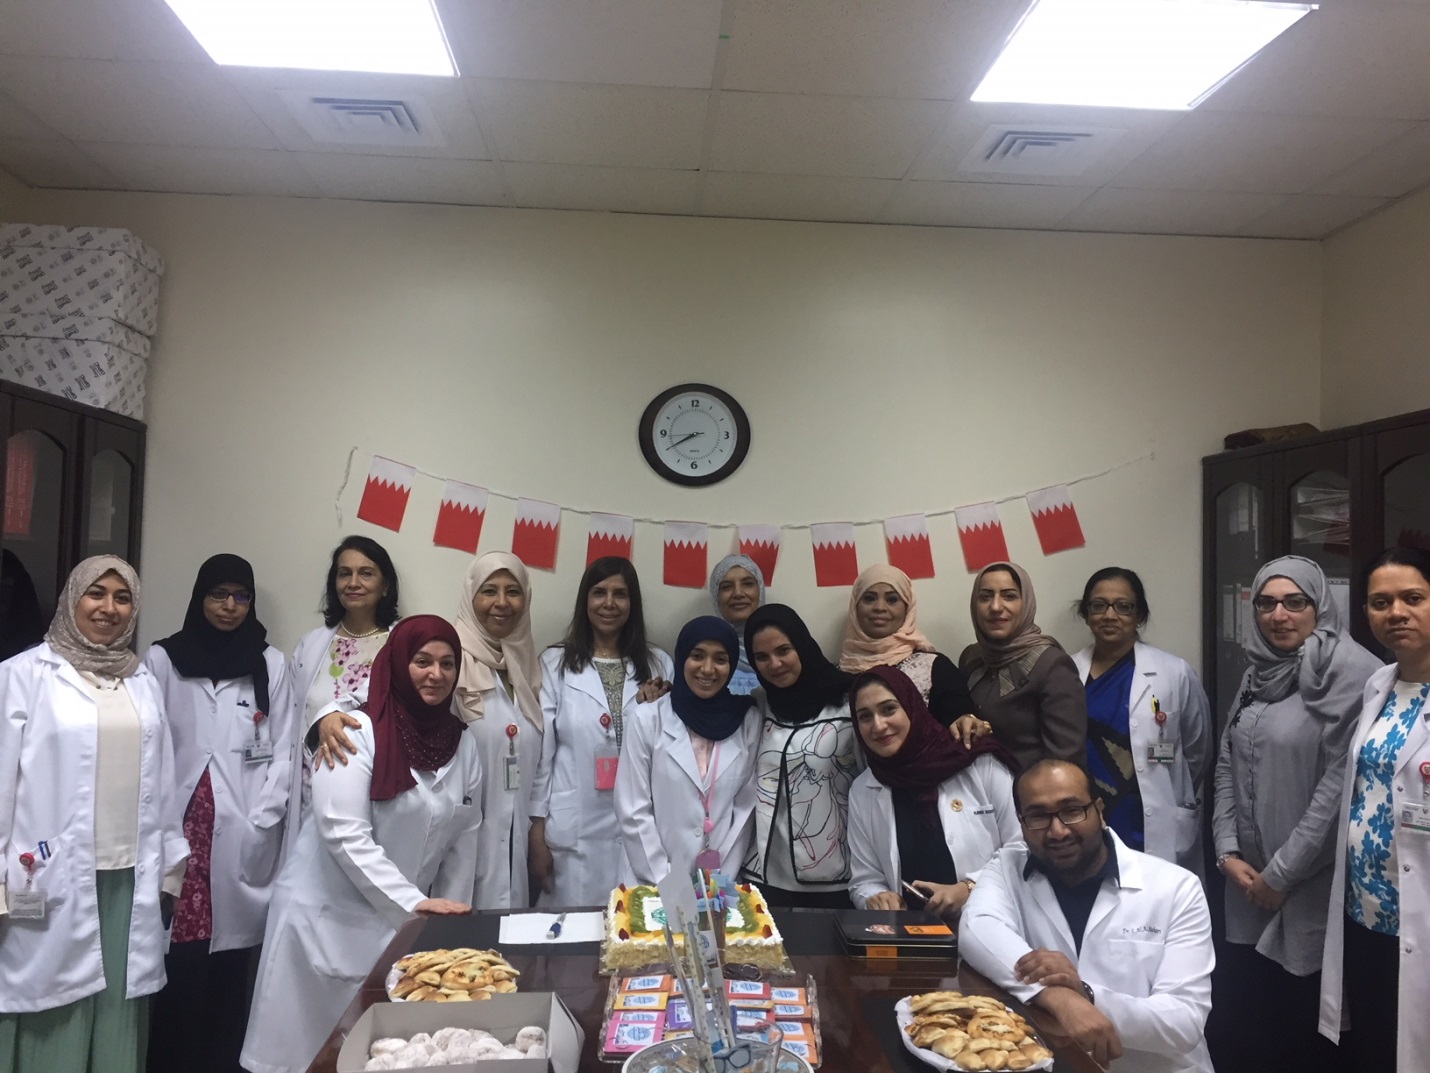 السلمانية يحتفل بالاسبوع العالمي للمختبرات د. إيمان فريد : ميكنة مختبر الأحياء الدقيقة من المشاريع المميزة التي سيتم افتتاحها قريبا